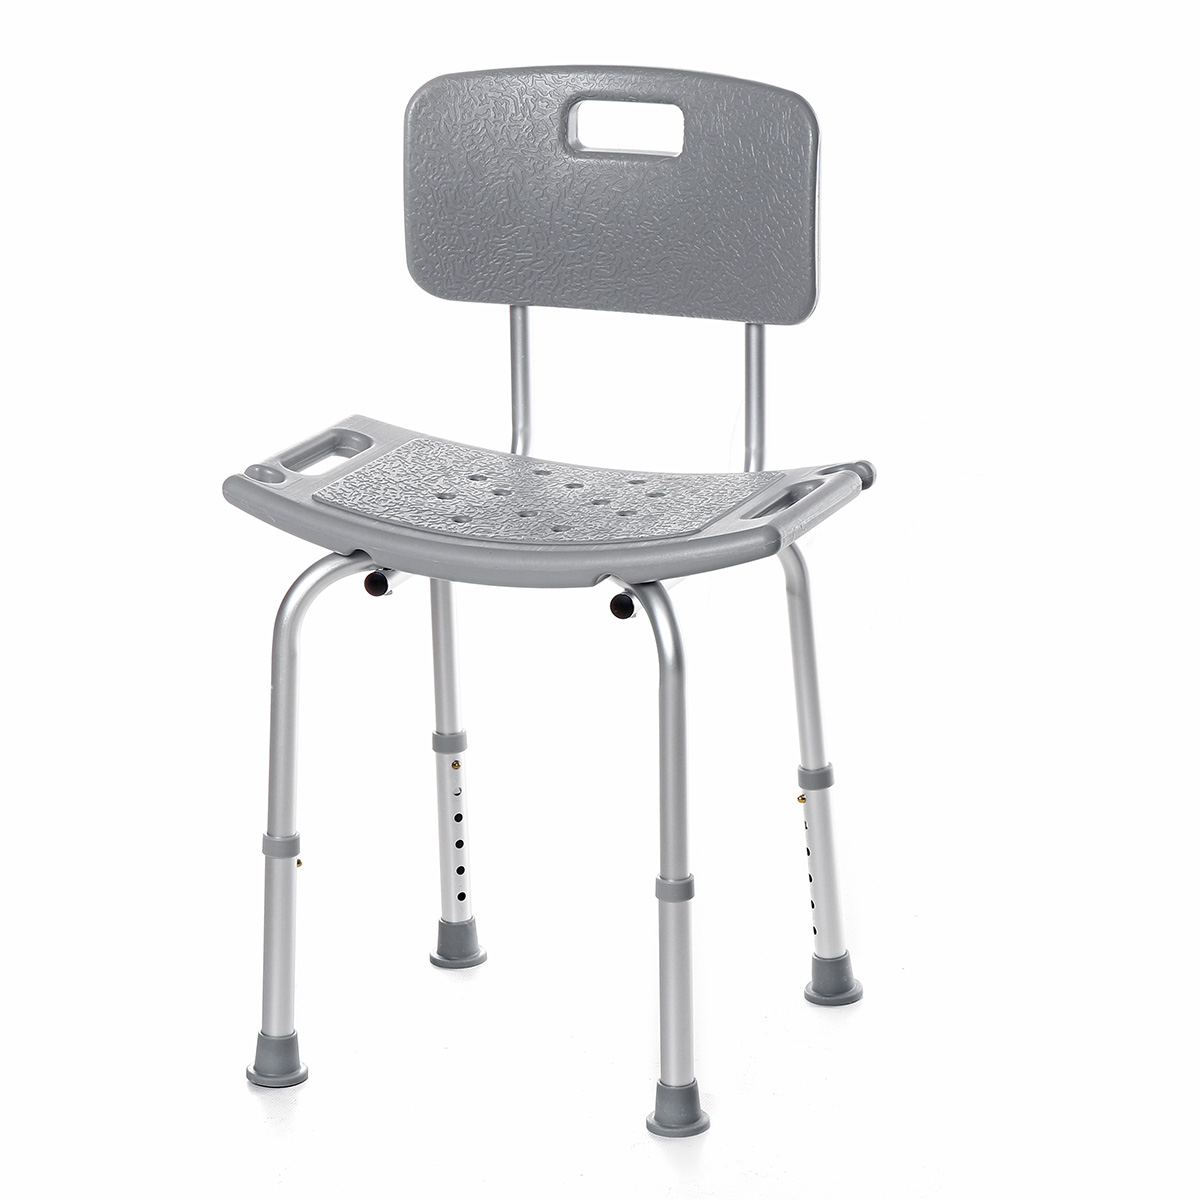 

Adjustable Medical Elderly Bath Shower Chair Bathtub Bench Stool Aid Seat 158kg